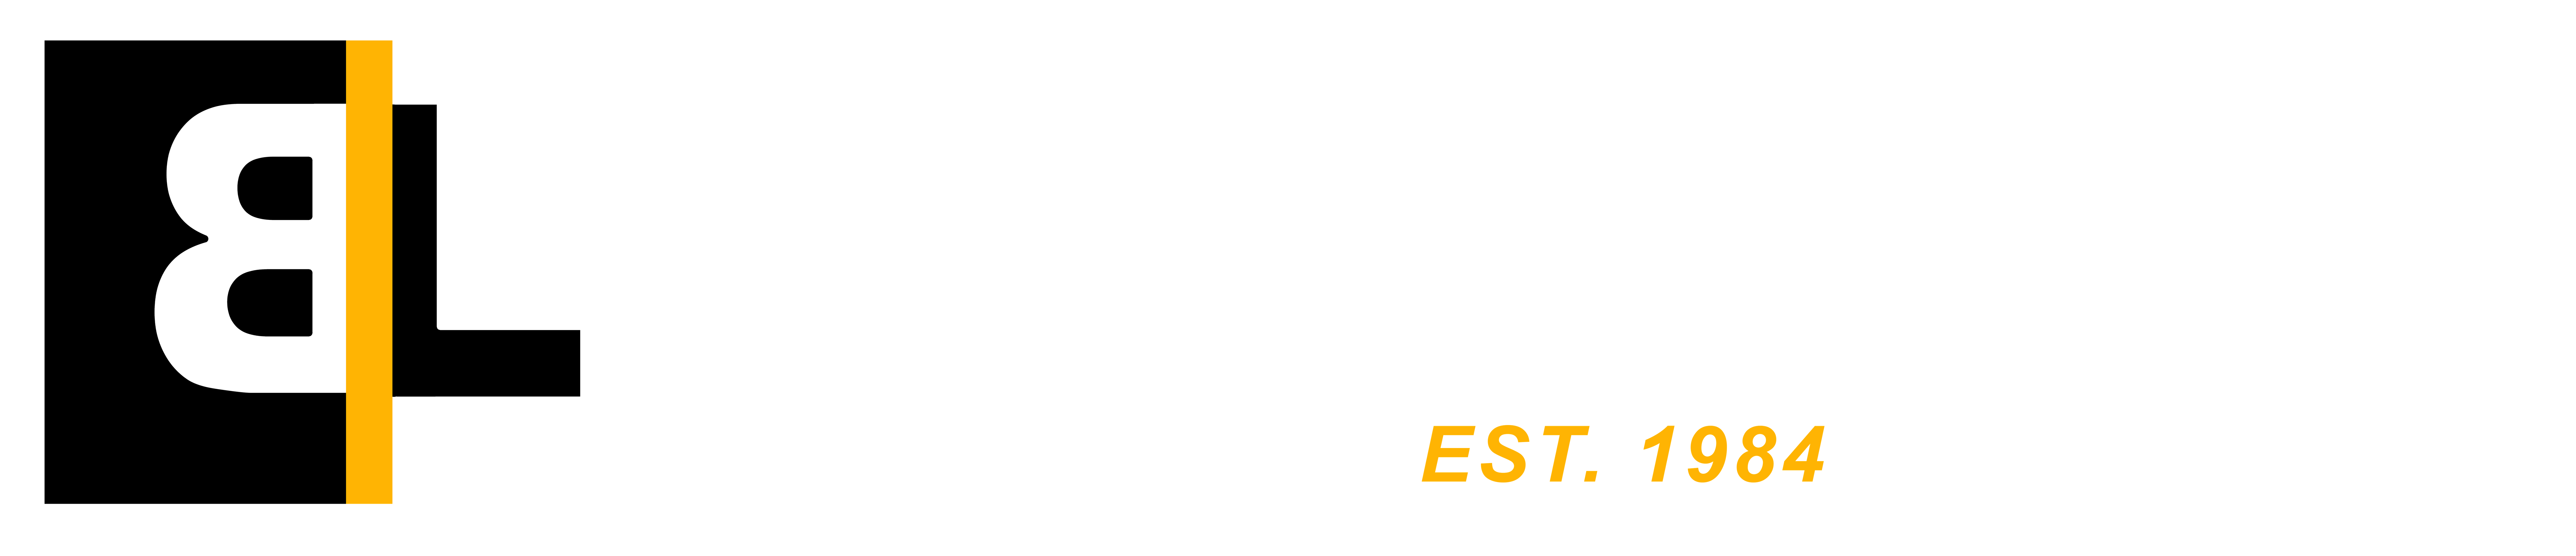 Brite Line Co